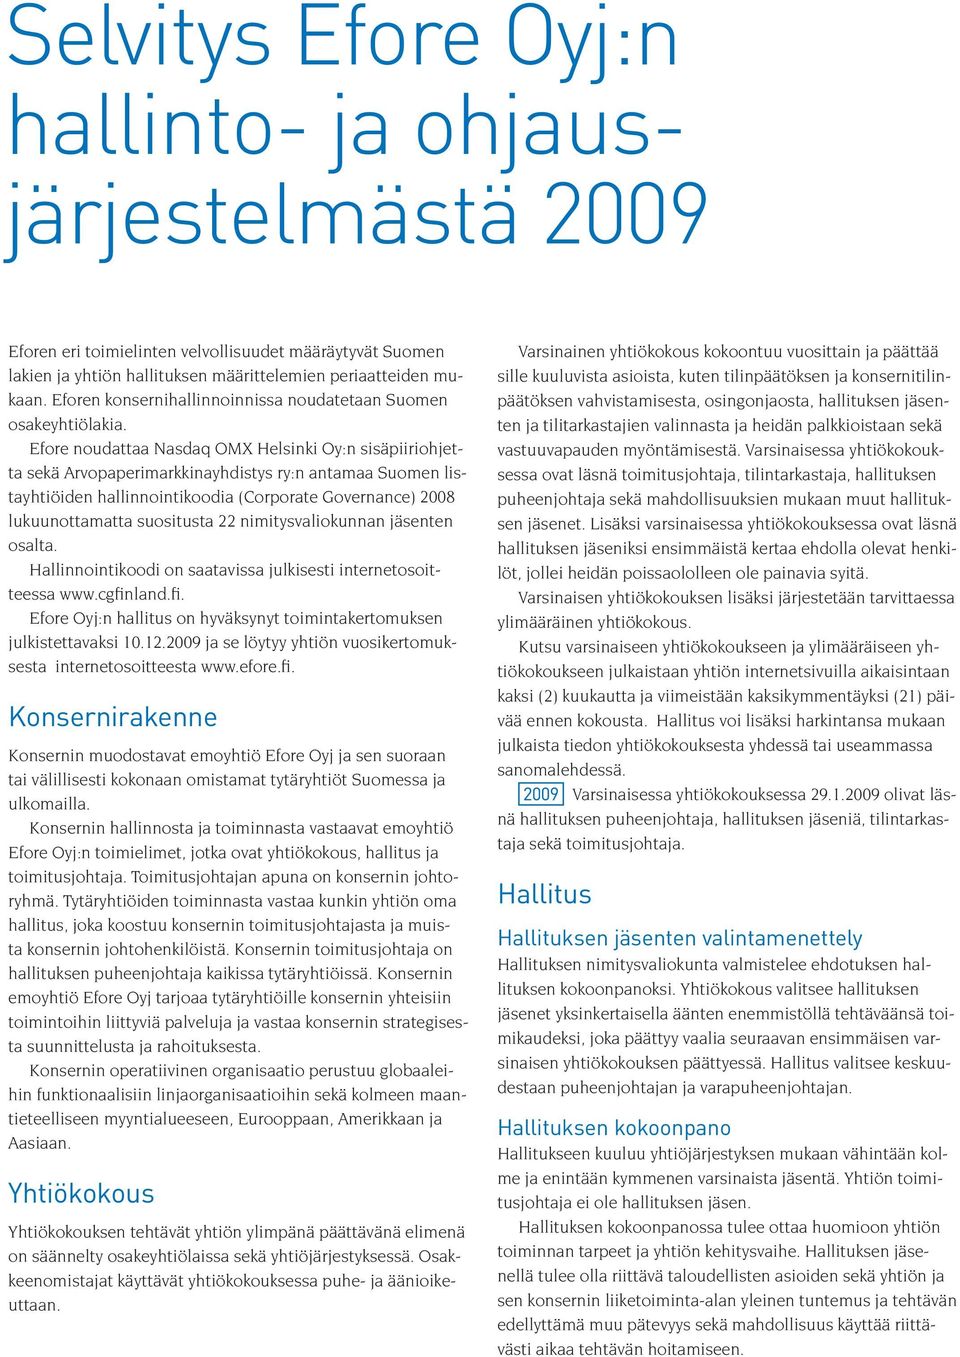 Efore noudattaa Nasdaq OMX Helsinki Oy:n sisäpiiriohjetta sekä Arvopaperimarkkinayhdistys ry:n antamaa Suomen listayhtiöiden hallinnointikoodia (Corporate Governance) 2008 lukuunottamatta suositusta